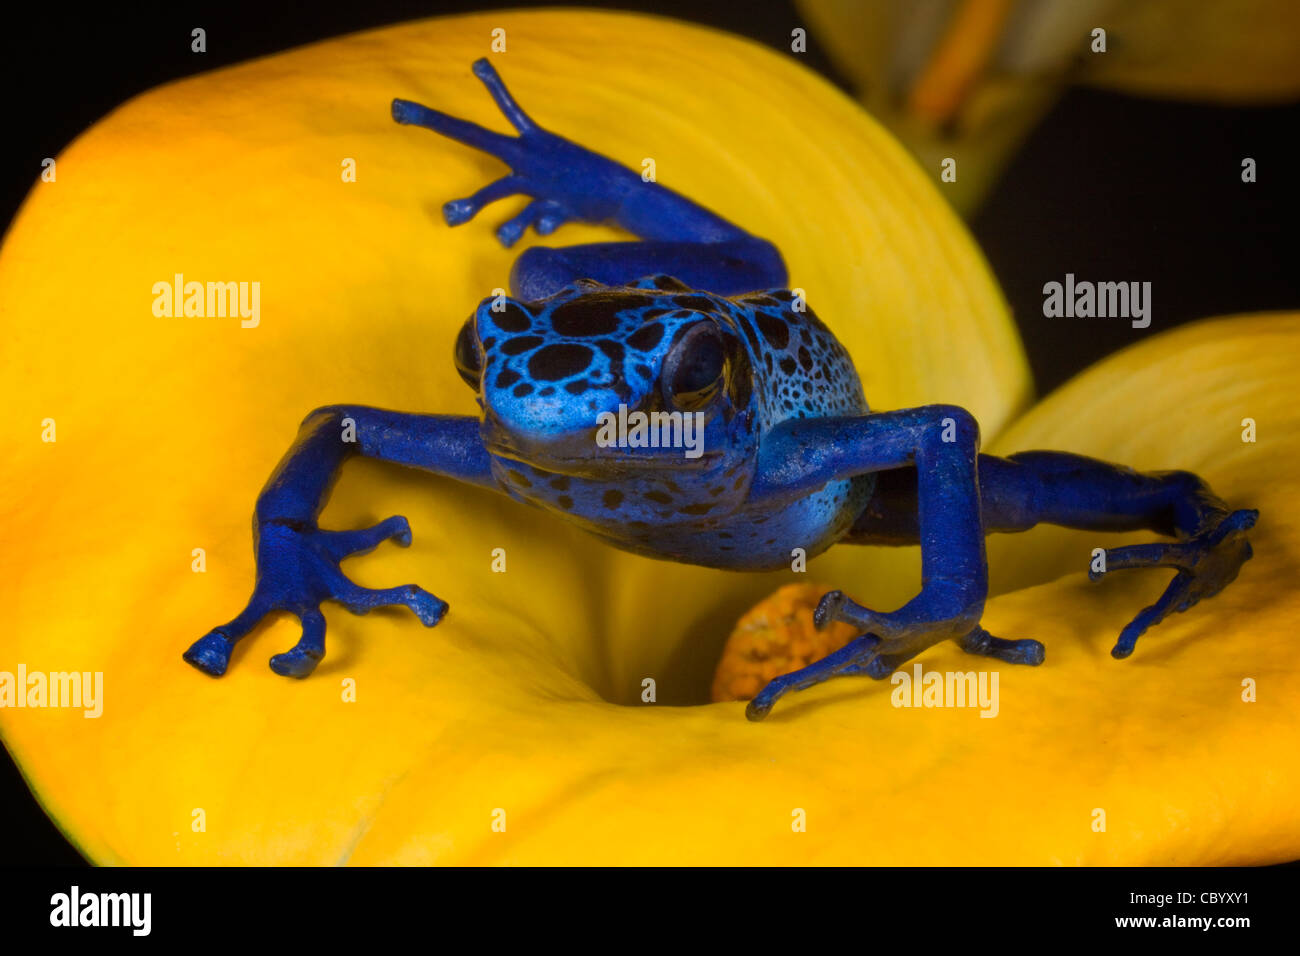 Blue poison dart frog (Dendrobates Azureus) on yellow flower. Stock Photo